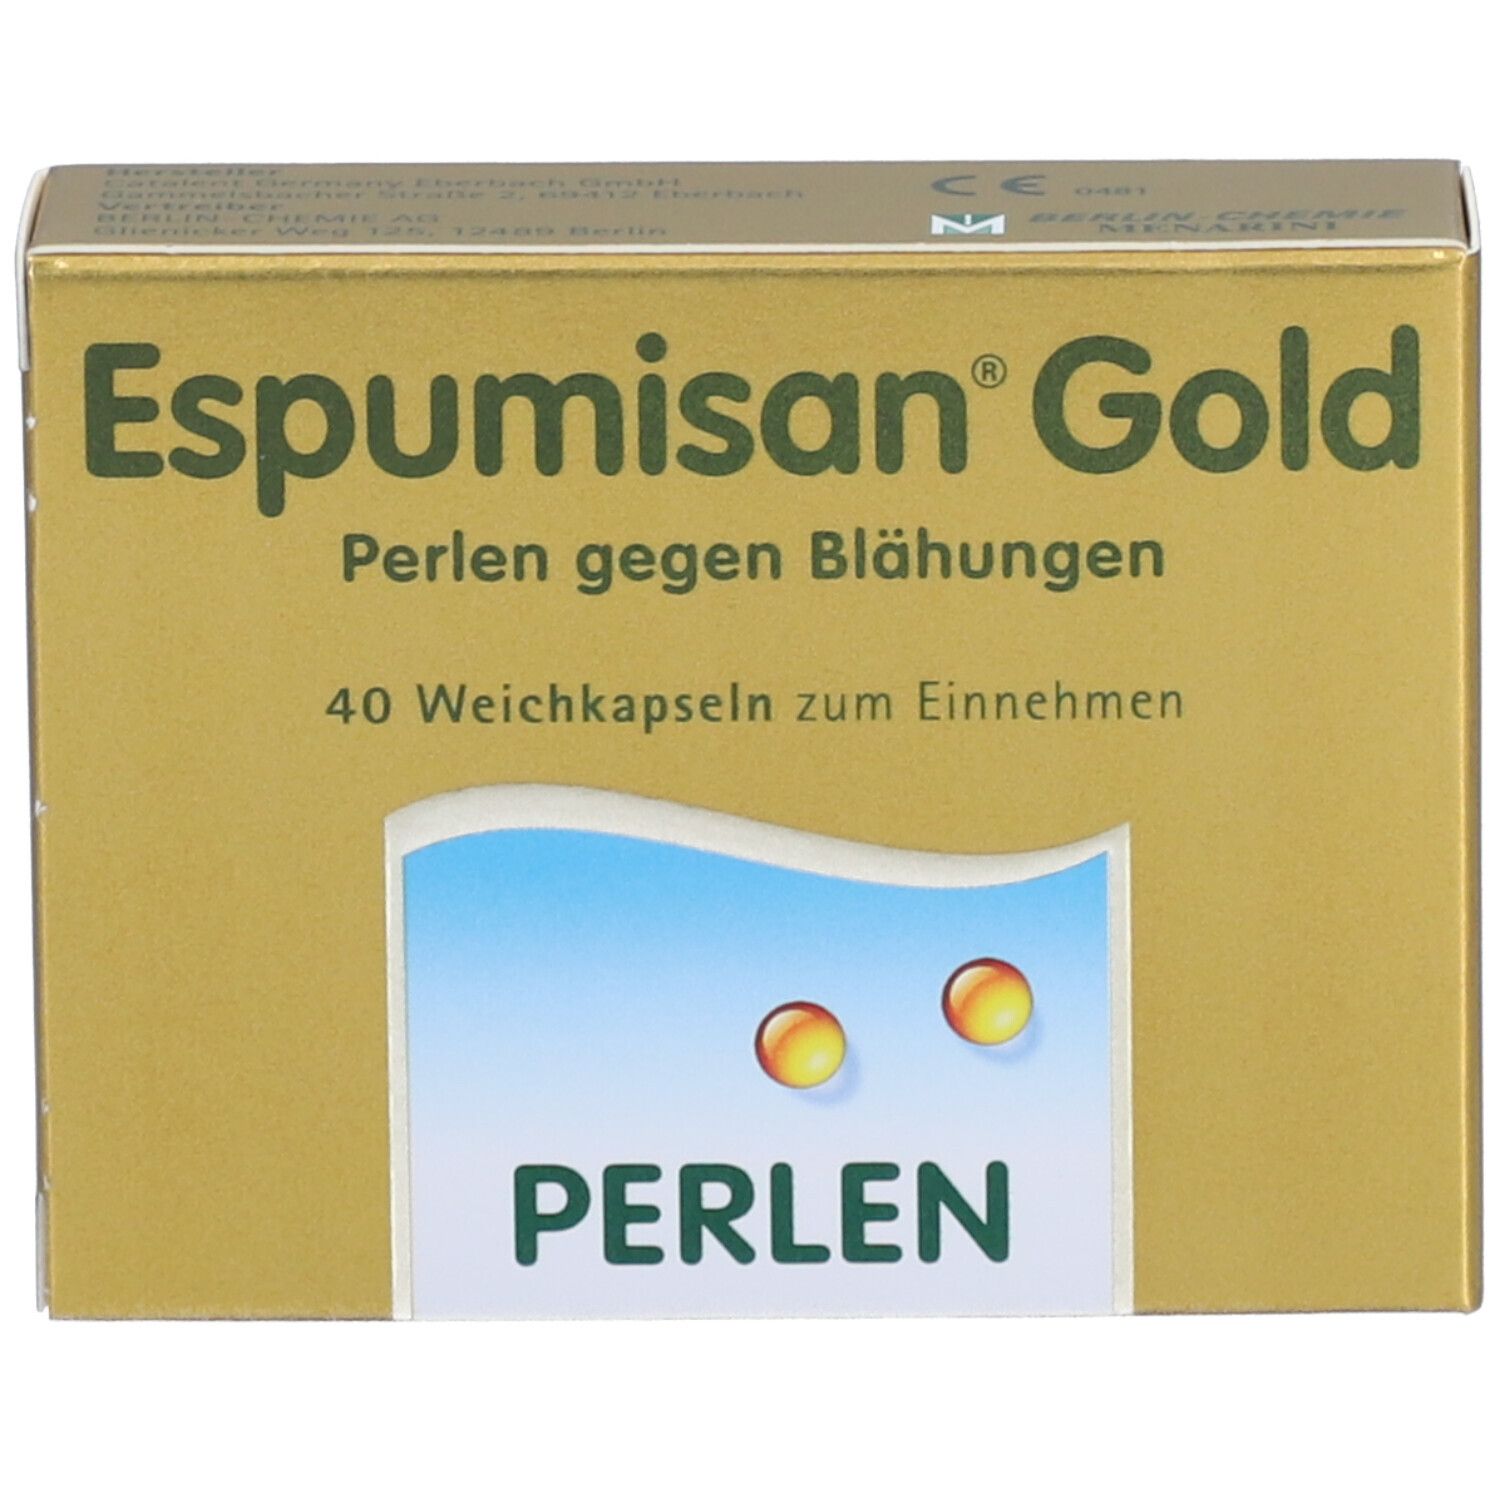 Espumisan® Gold